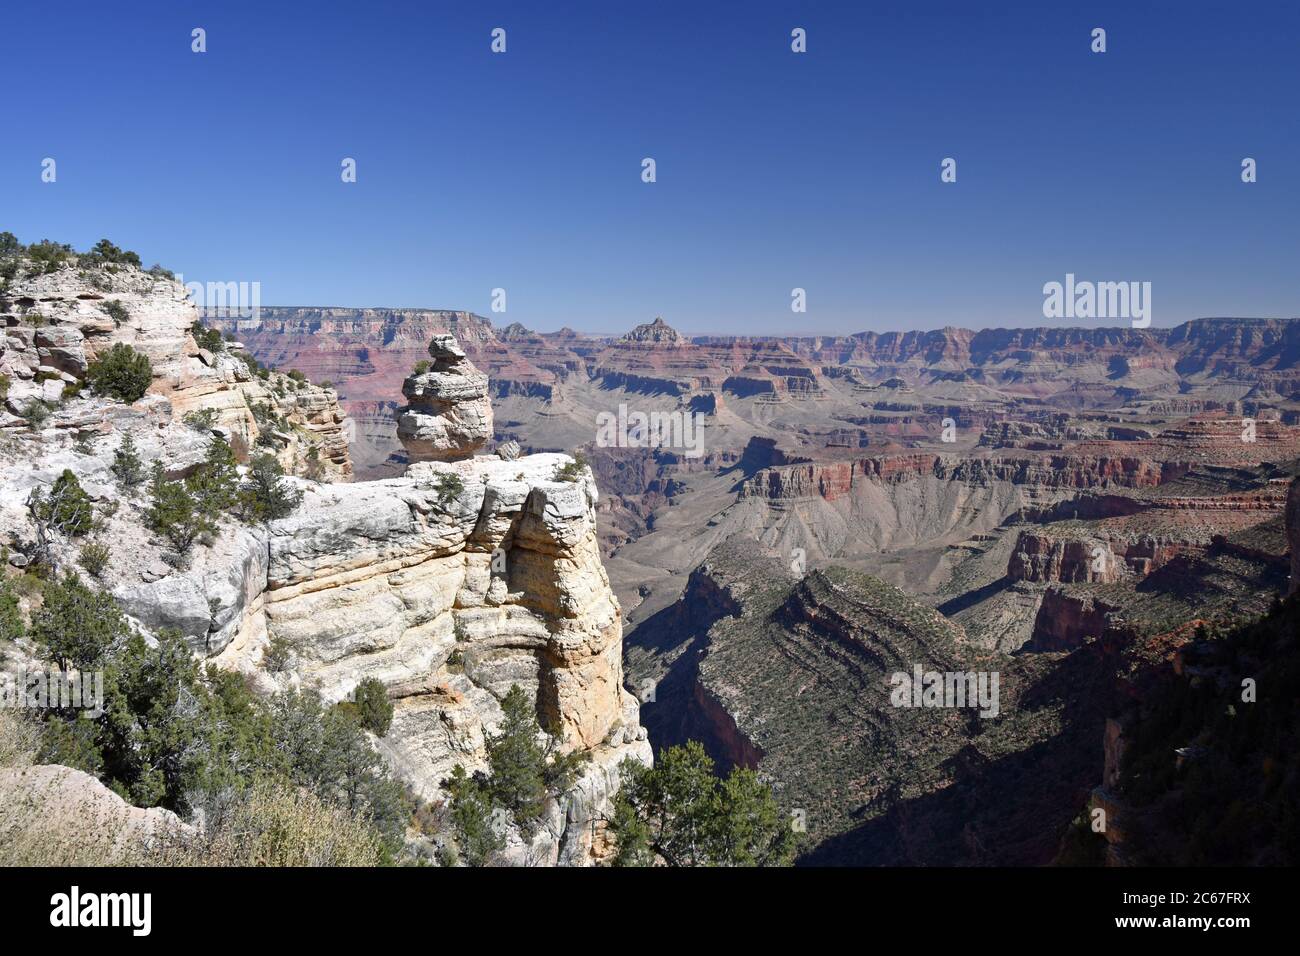 Desert View Drive formazione rocciosa: Anatra su una roccia. Il Grand Canyon può essere visto sullo sfondo. Cielo azzurro e roccia rossa nel canyon. Foto Stock